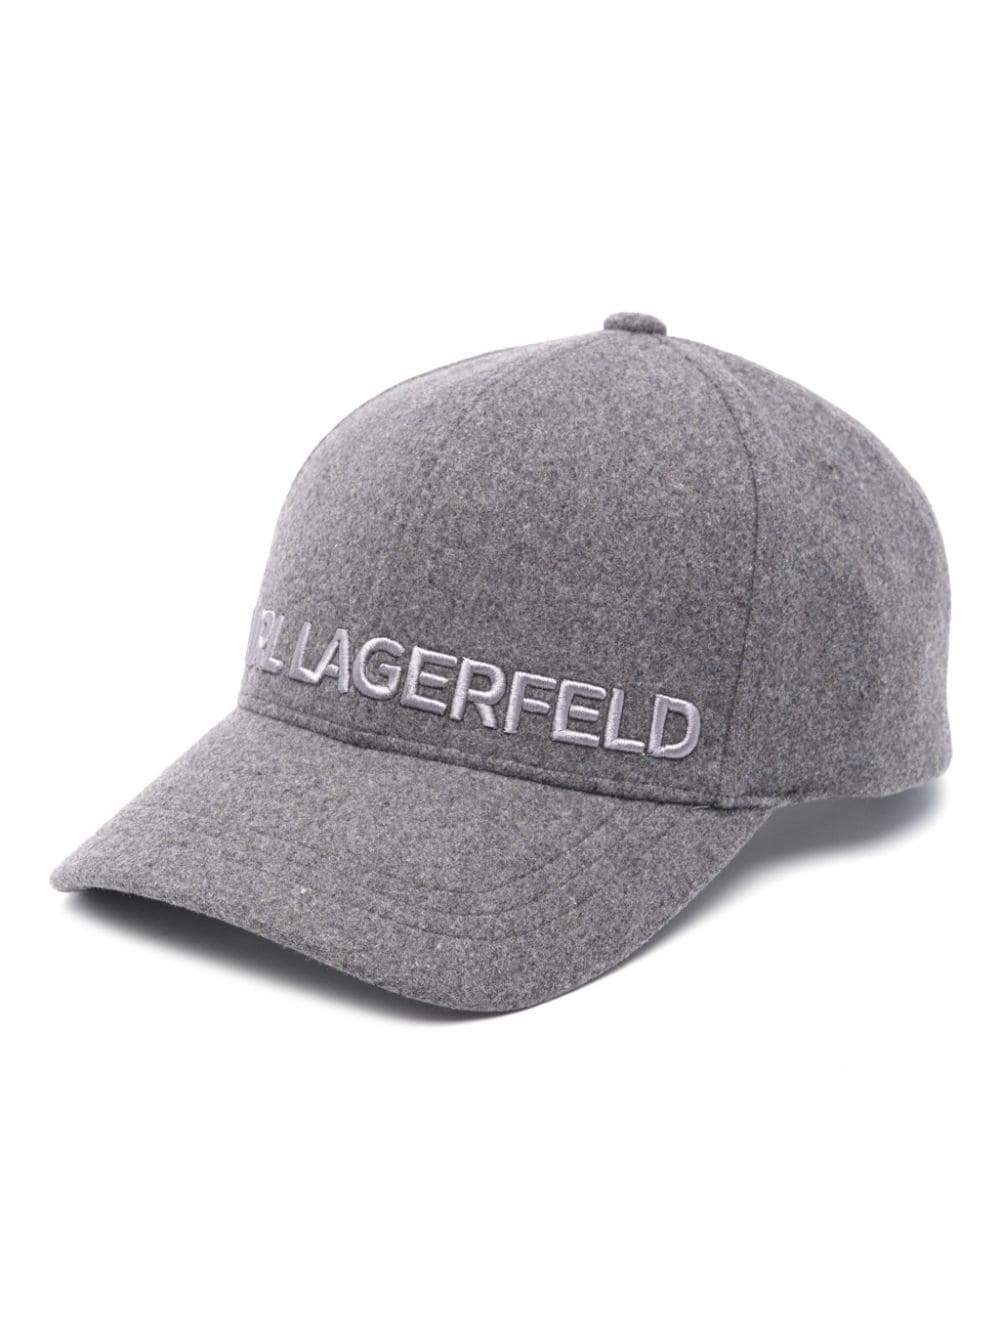 karl lagerfeld casquette brossée à logo brodé - gris